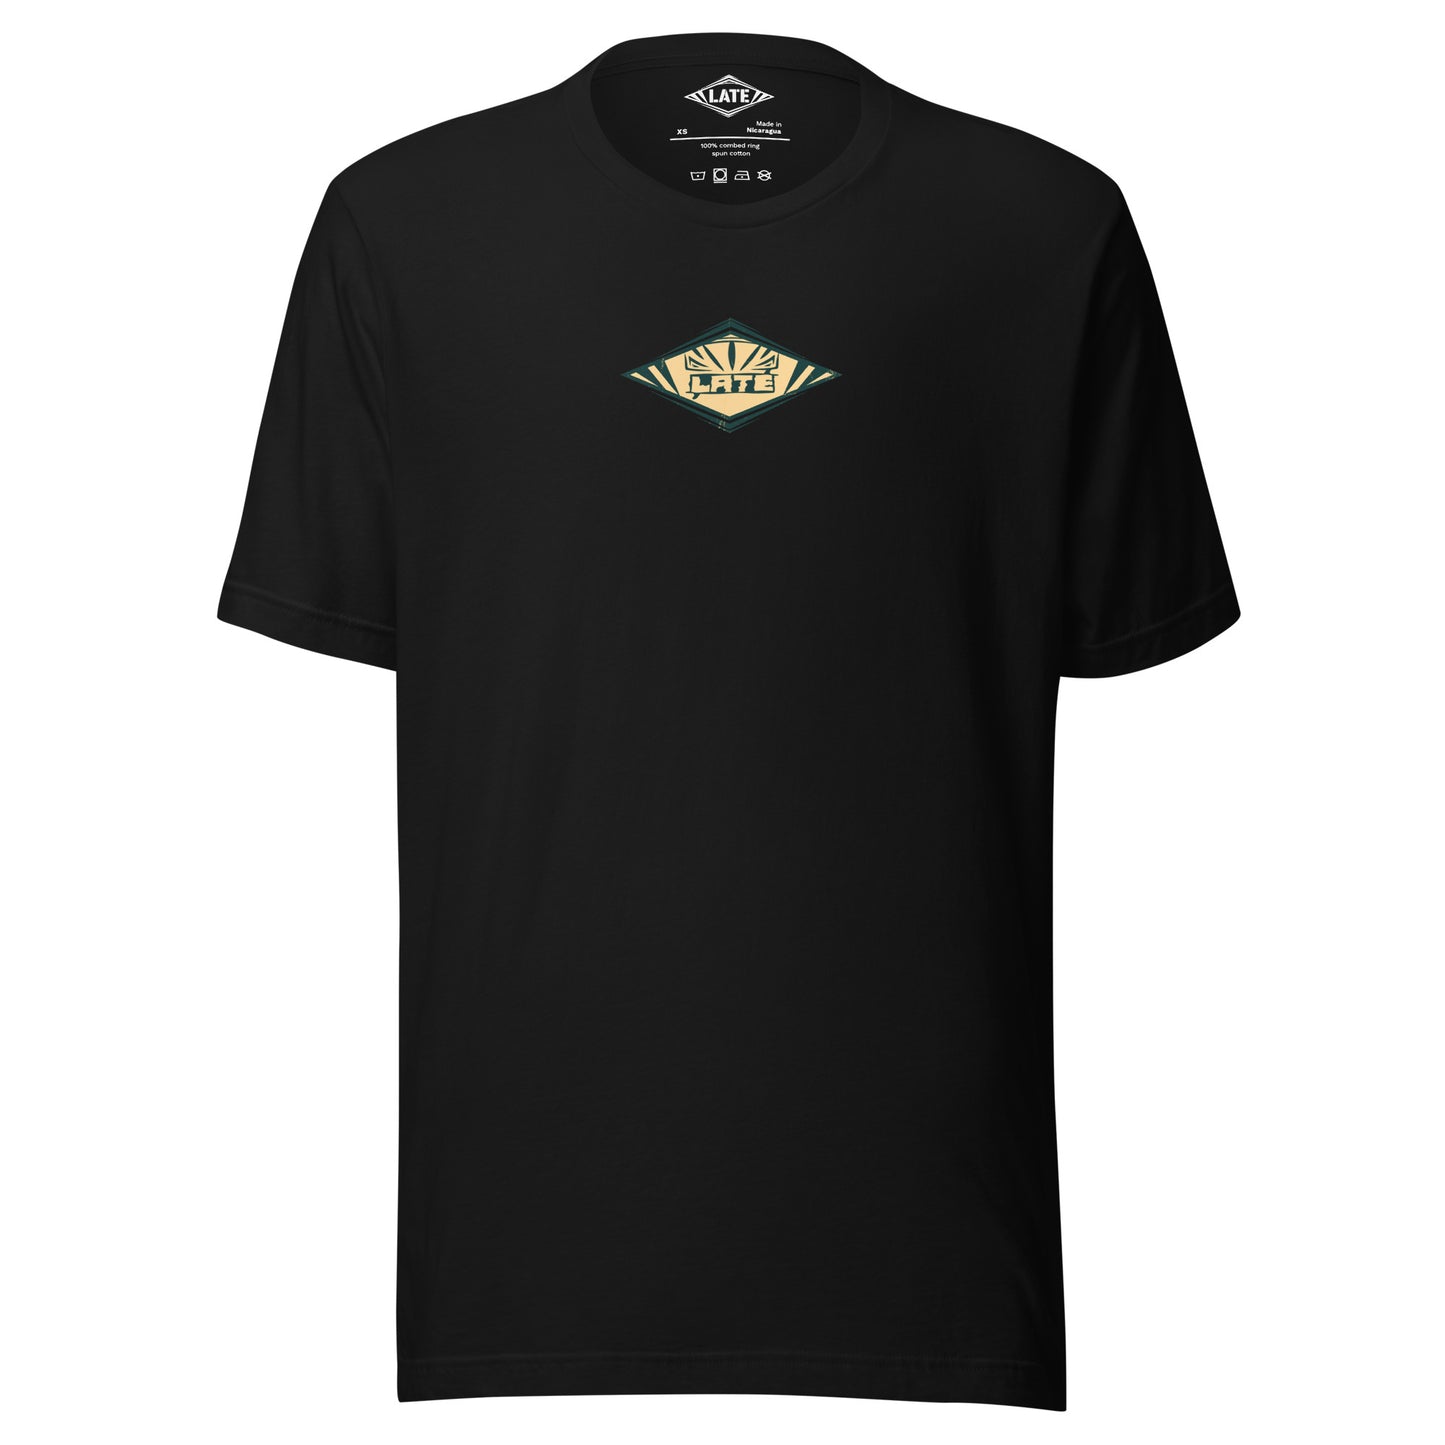 T-Shirt rétro Radical Wave, inspiration maori et vagues des spots mondiaux. Tee shirt unisexe de face noir